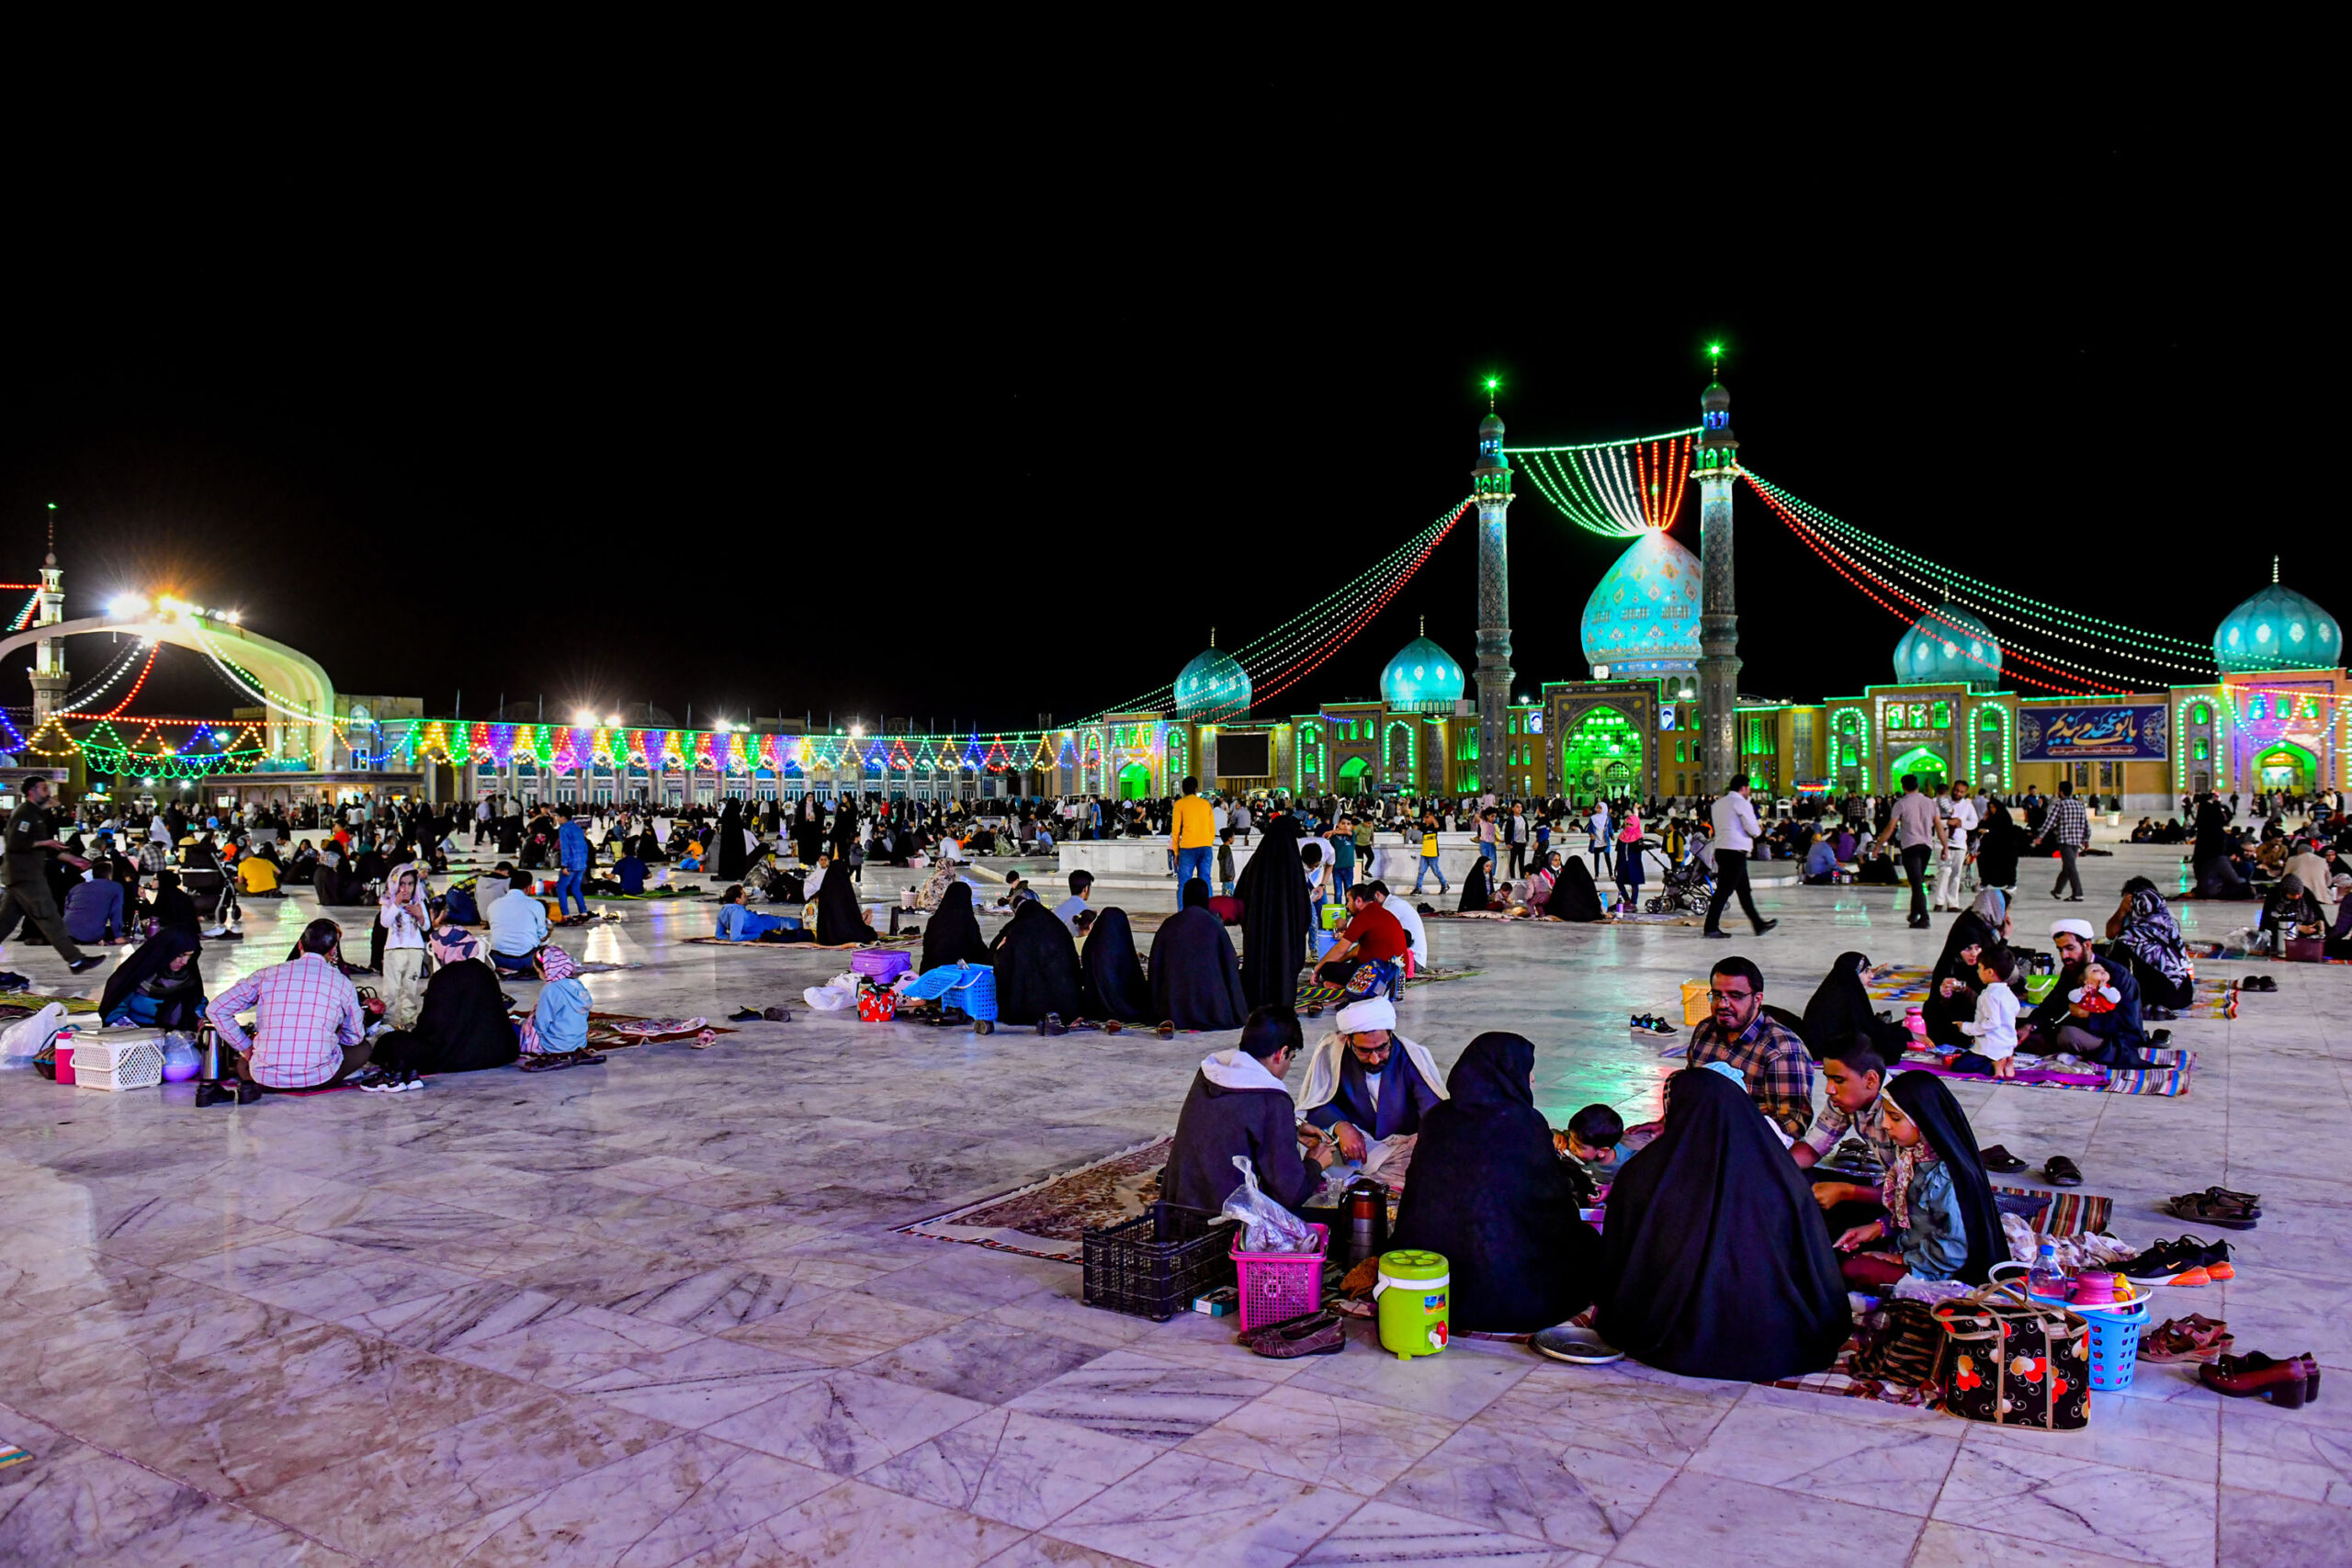 حال و هوای مسجد مقدس جمکران در شب های ماه مبارک رمضان